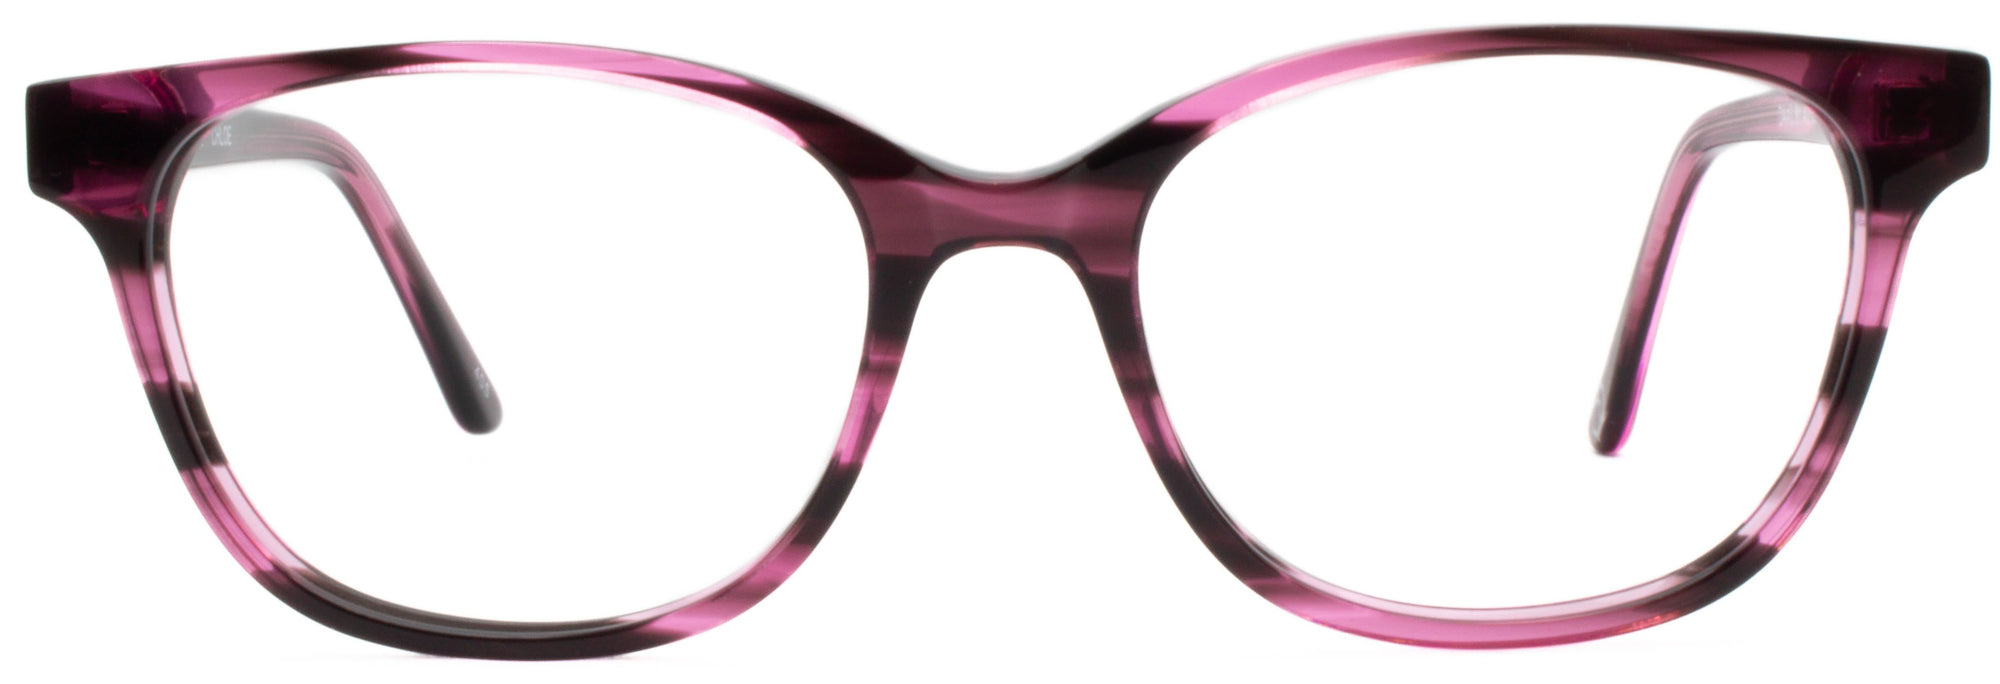 Alexander Daas - Chloe Eyeglasses - Demi Purple - Front View